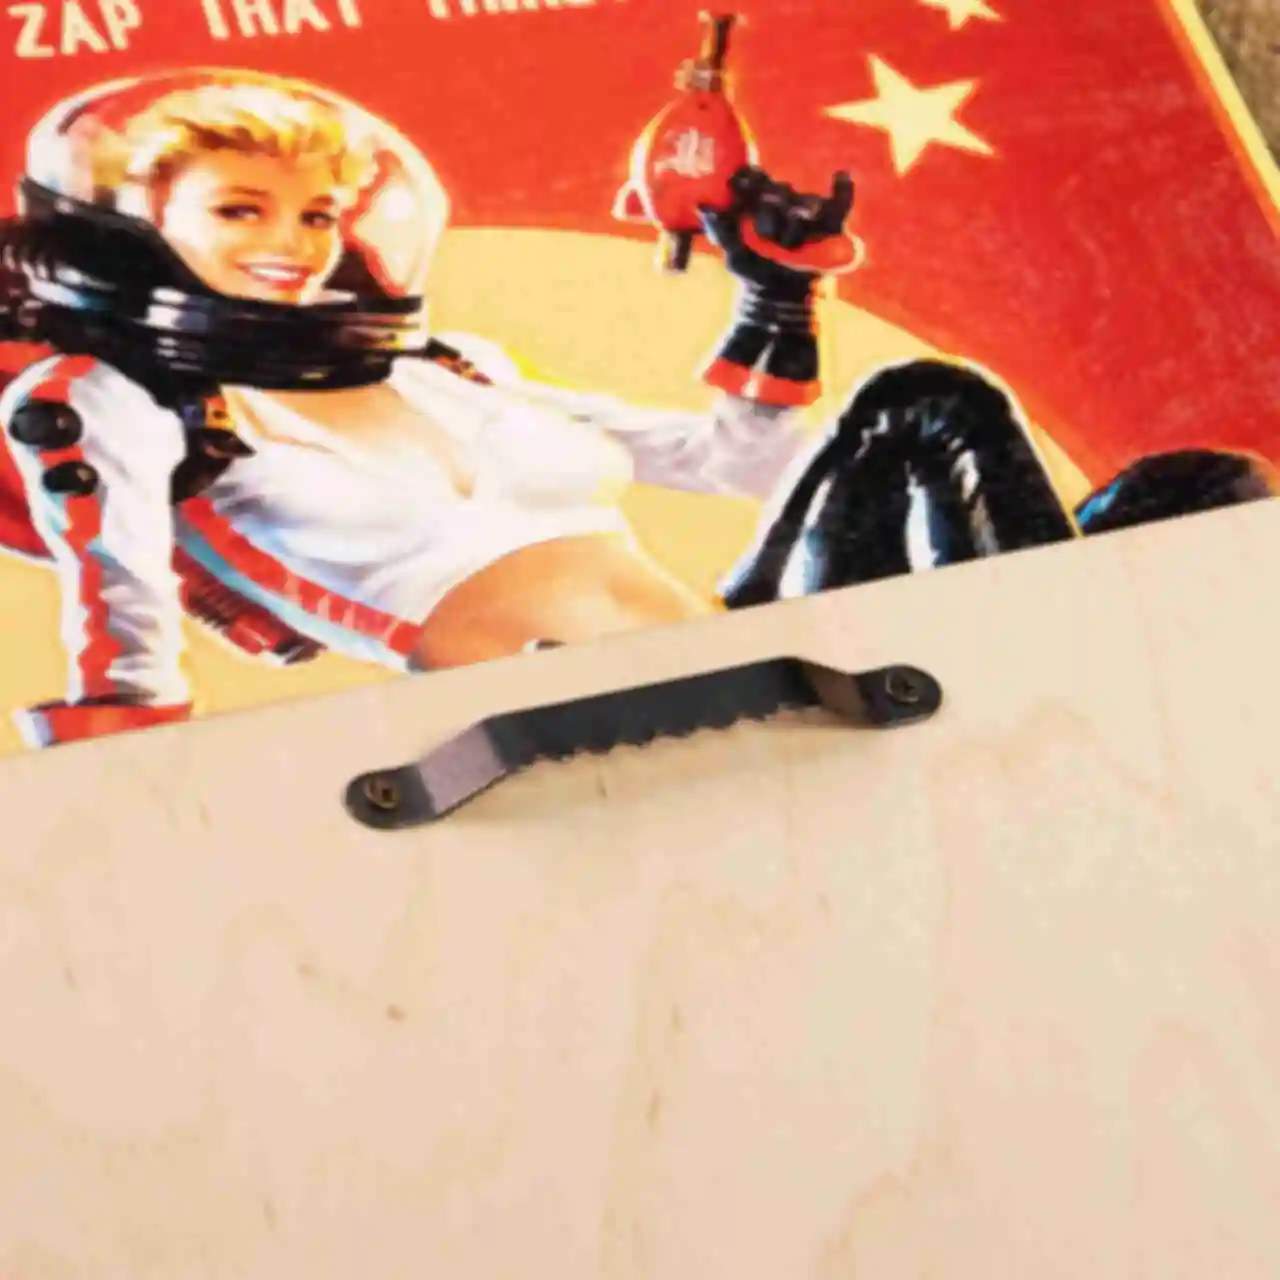 Деревянный постер Фоллаут • С надписью Nuka-Cola и девушкой • Плакат Fallout • Подарок для геймера. Фото №1